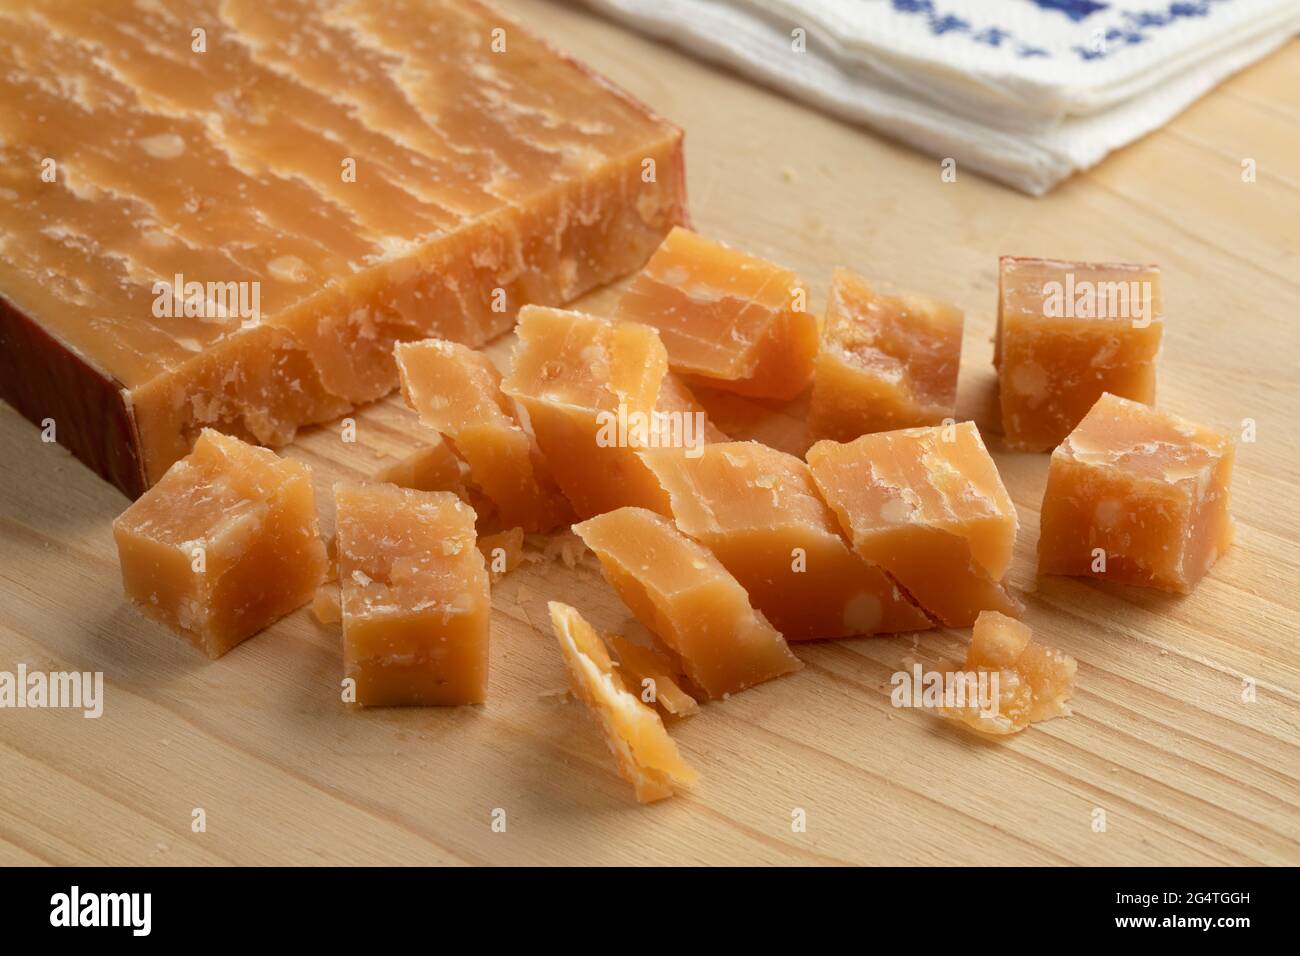 Cubes de vieux fromage de brebis hollandais mûr sur une planche à découper Banque D'Images